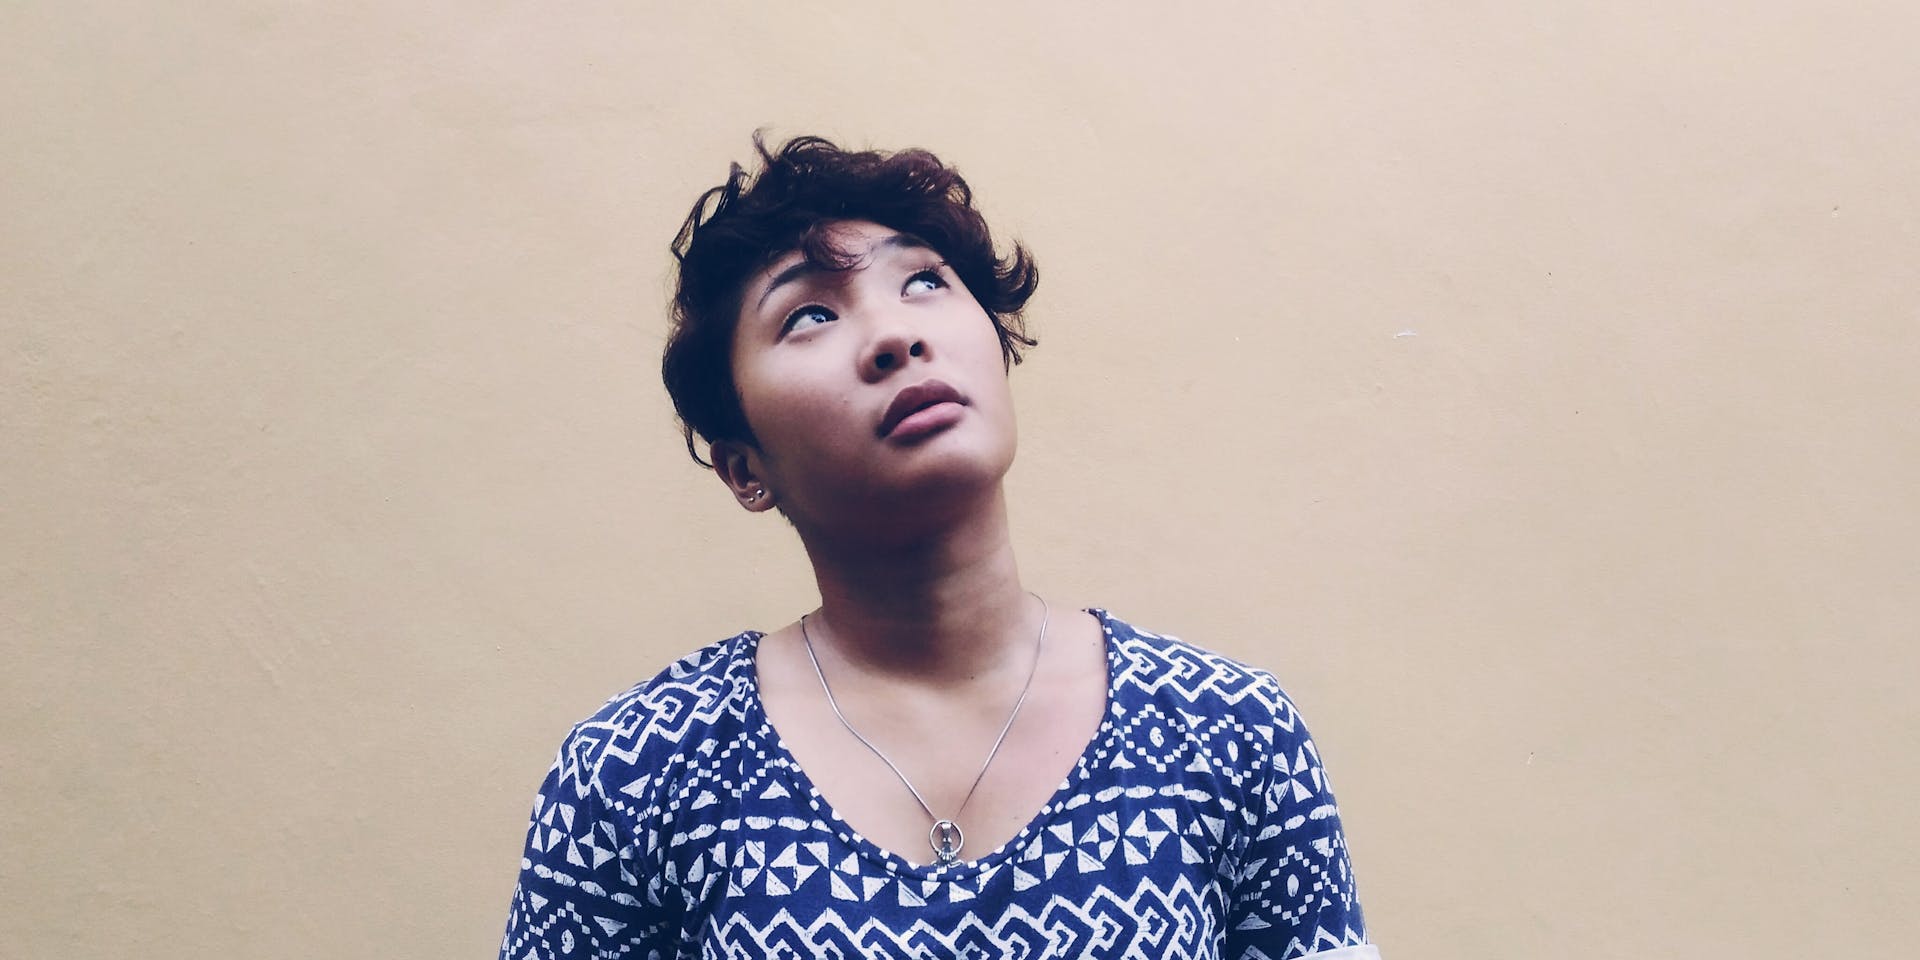 Una mujer filipina de pelo corto y oscuro está de pie contra una pared de color marrón claro, mirando hacia arriba, pensativa.